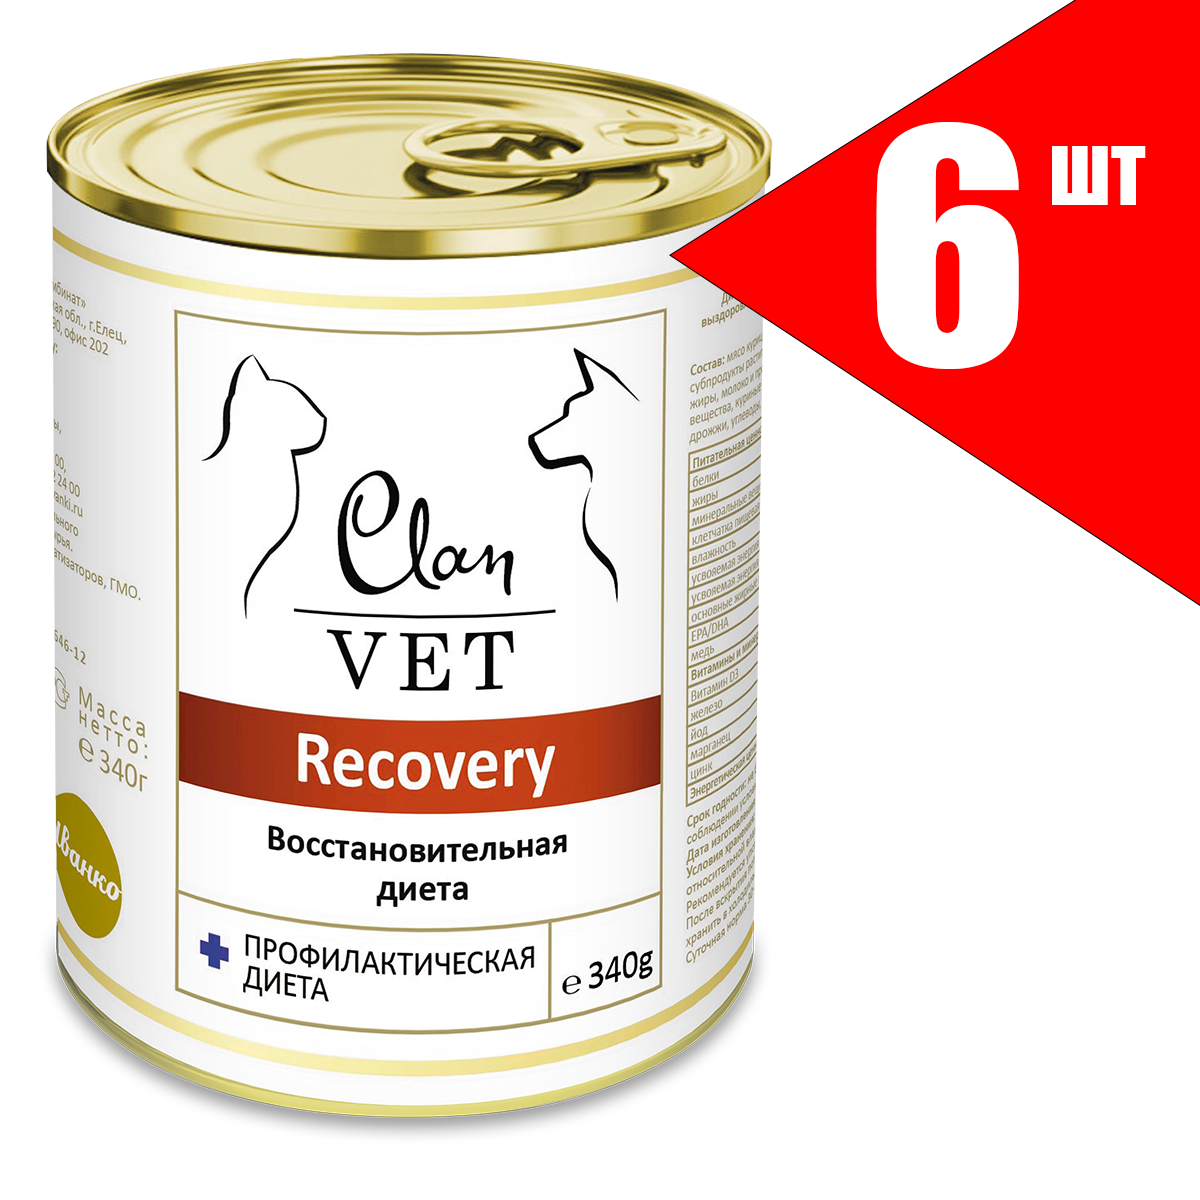 Консервы для собак и кошек Clan Vet Recovery восстановительная диета, 6шт по 340г